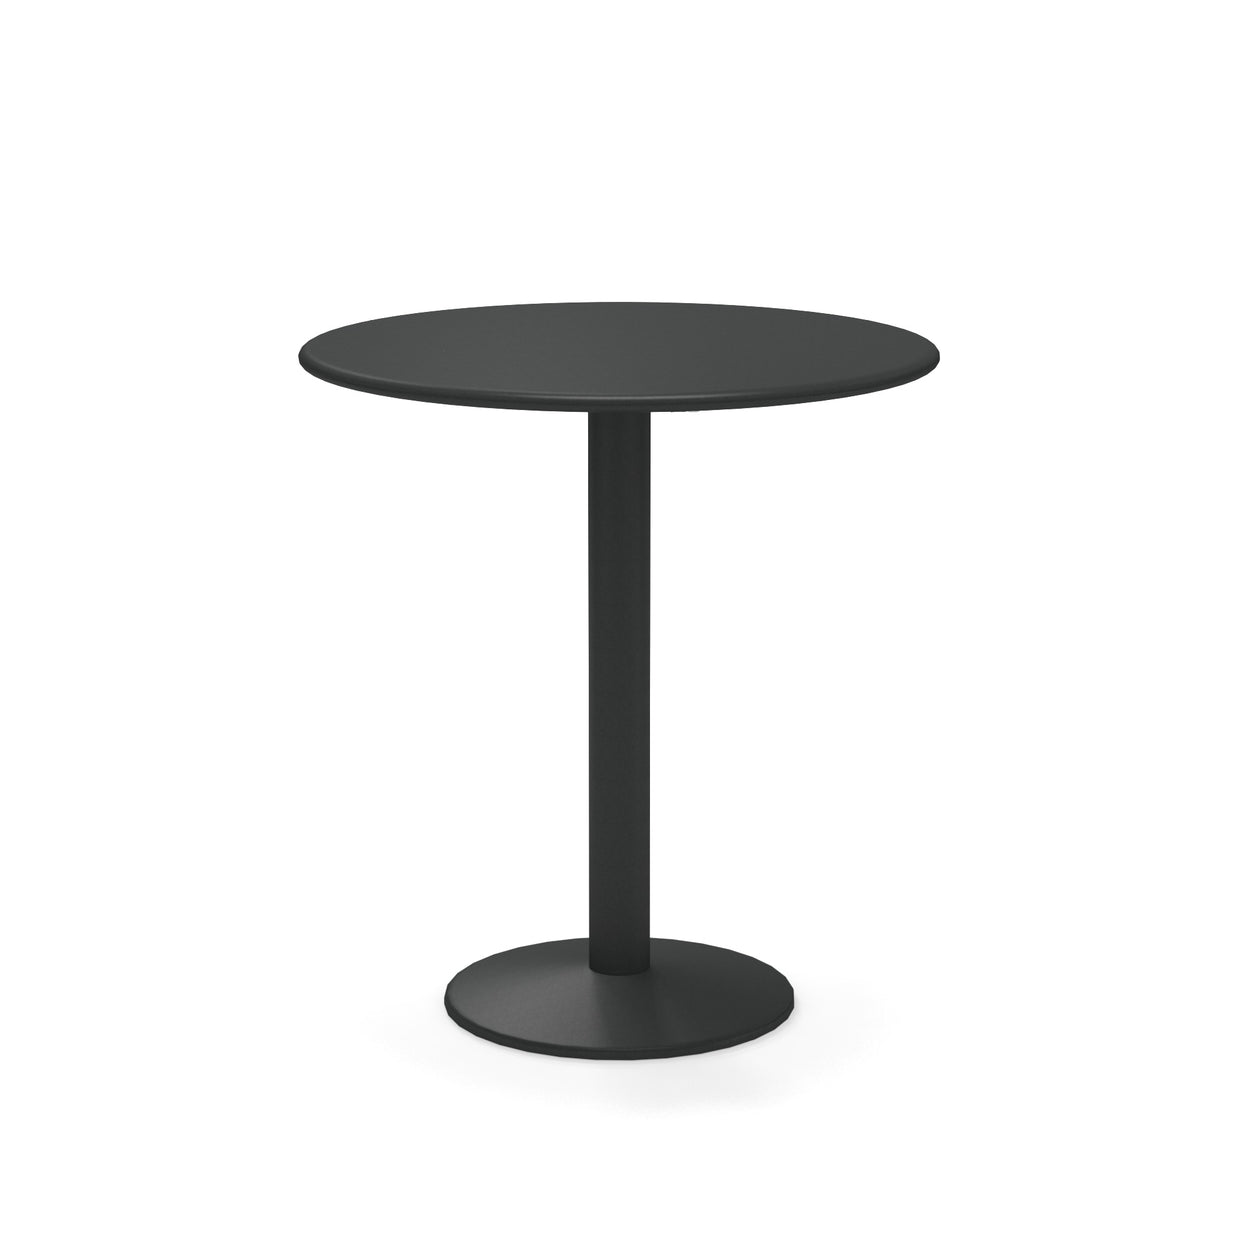 Thor tafel rond - 2 sizes